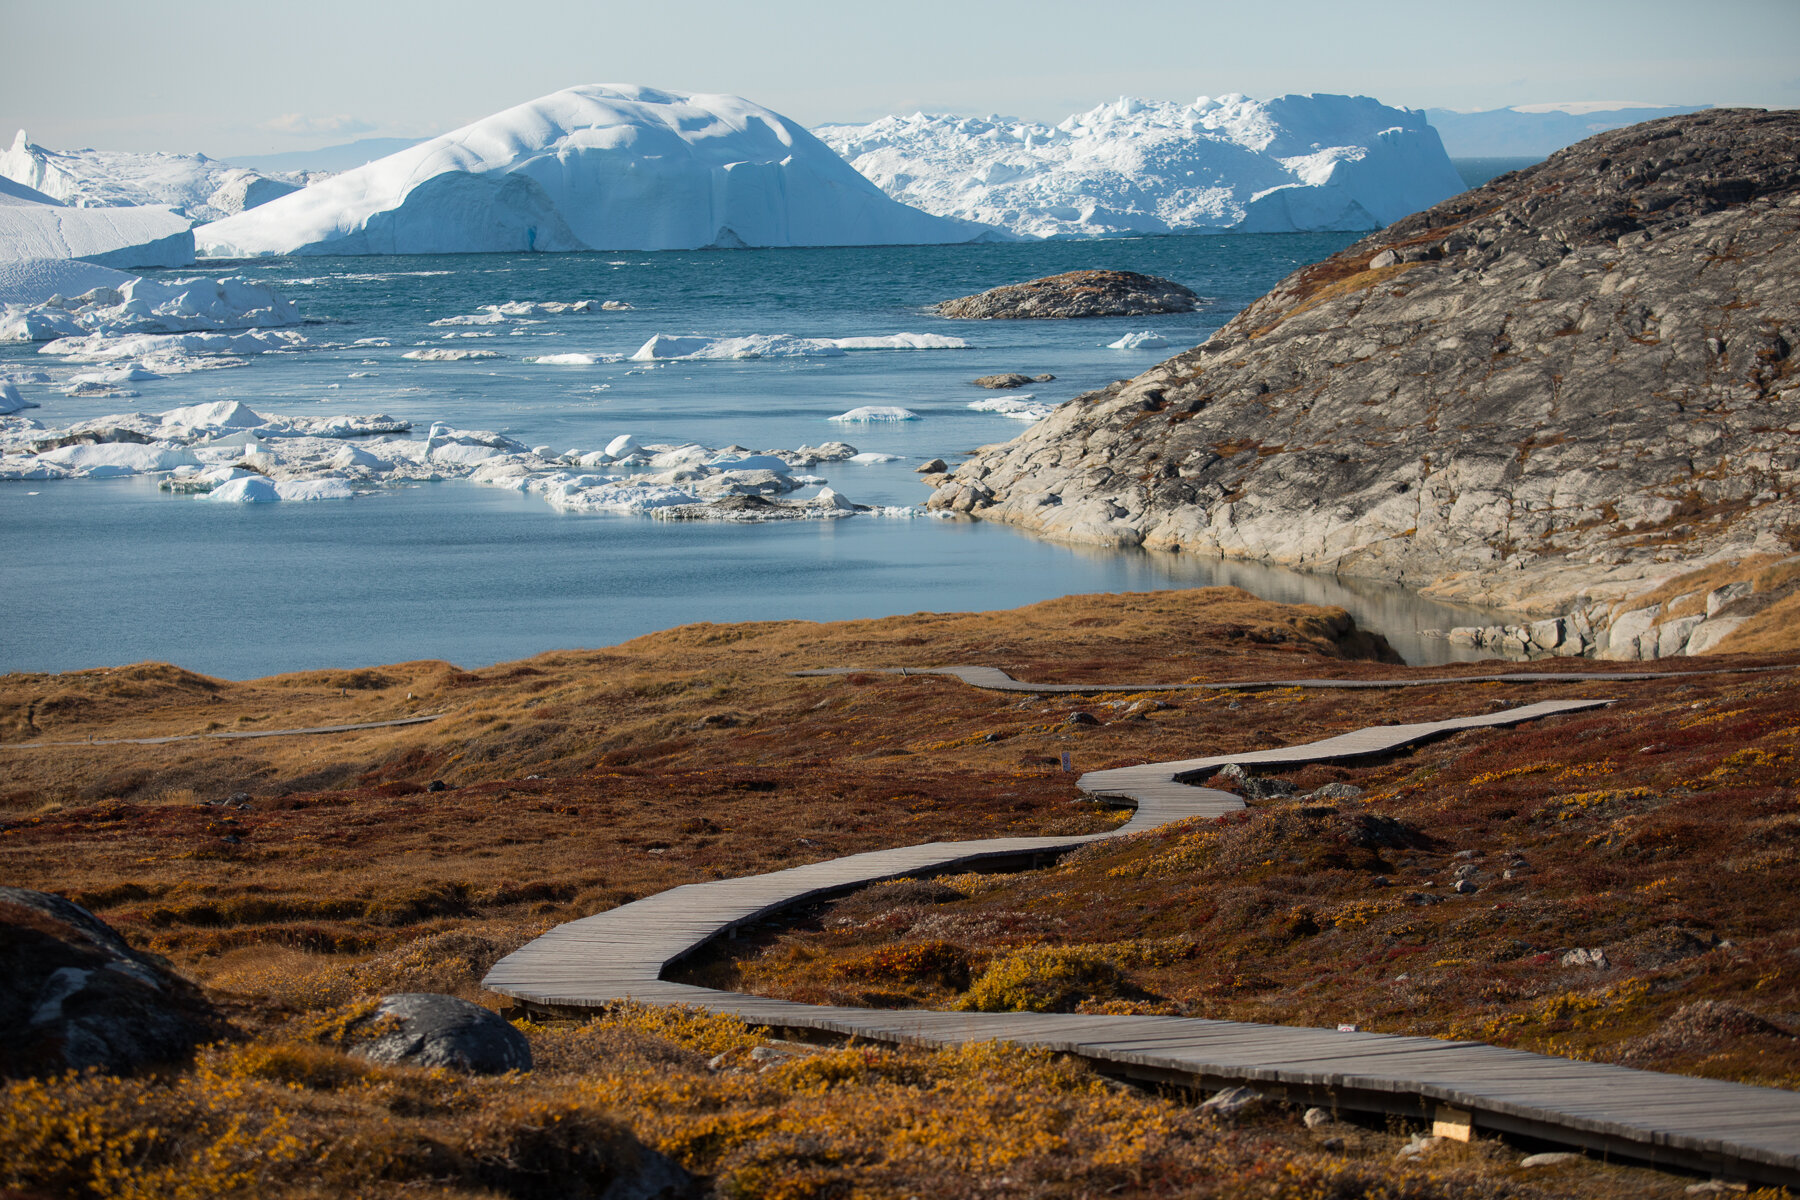  Greenland- Ilulissat- Ilulissat Icefjord UNESCO world heritage site 